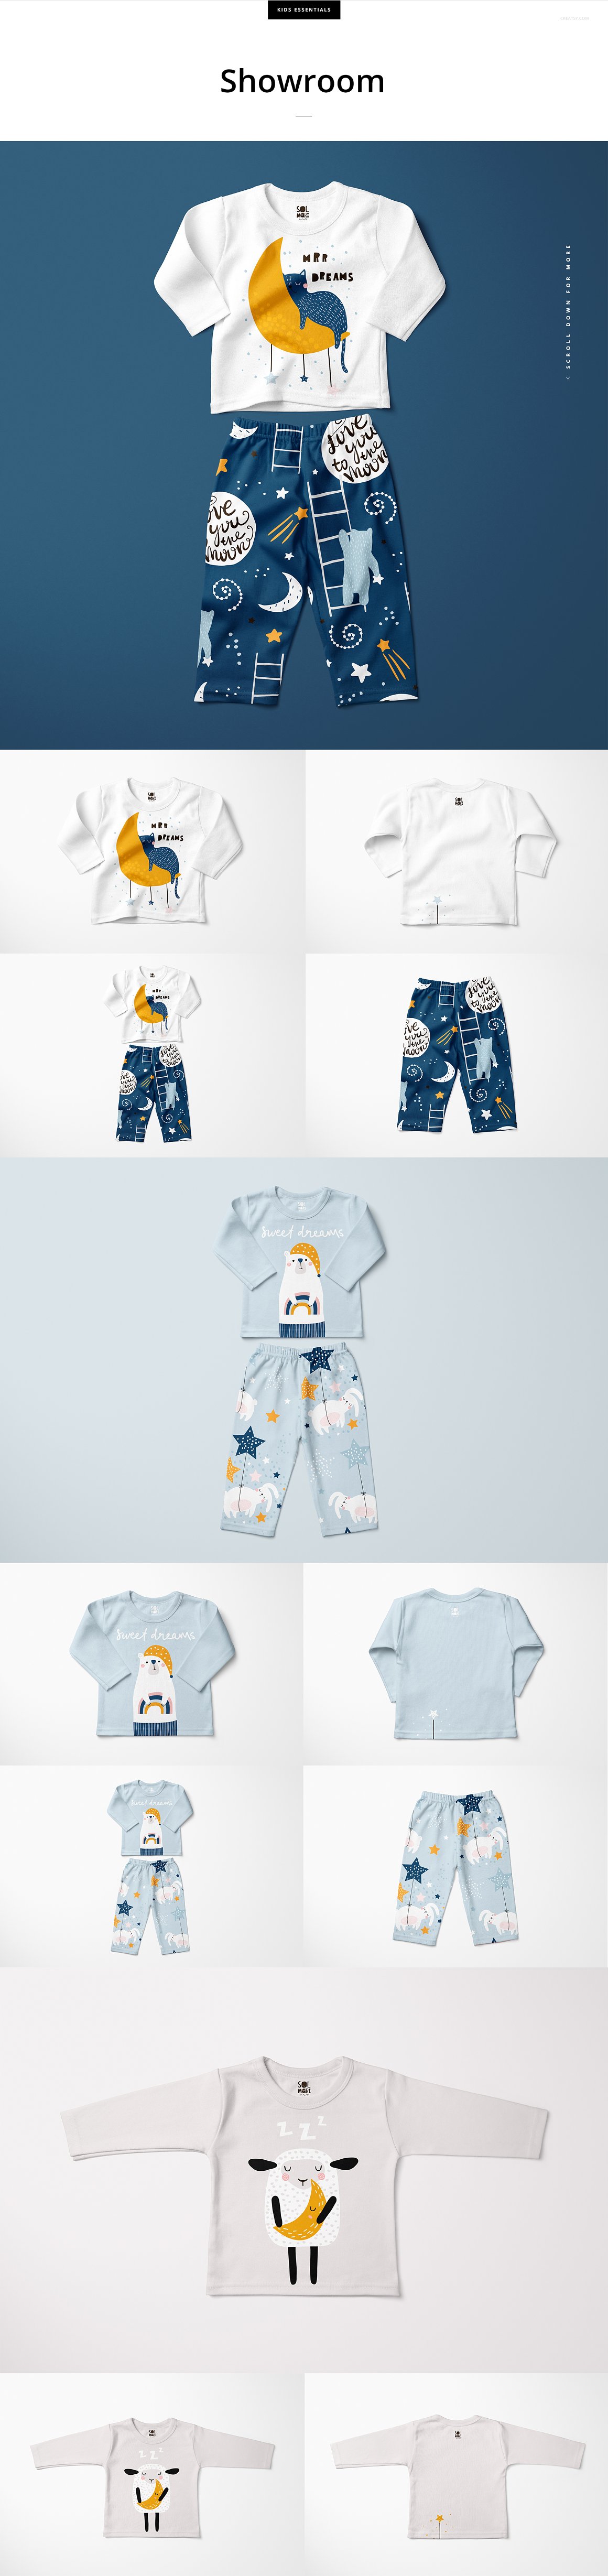 婴儿童装长袖睡衣套装母婴品牌设计提案样机模板 Baby Lo